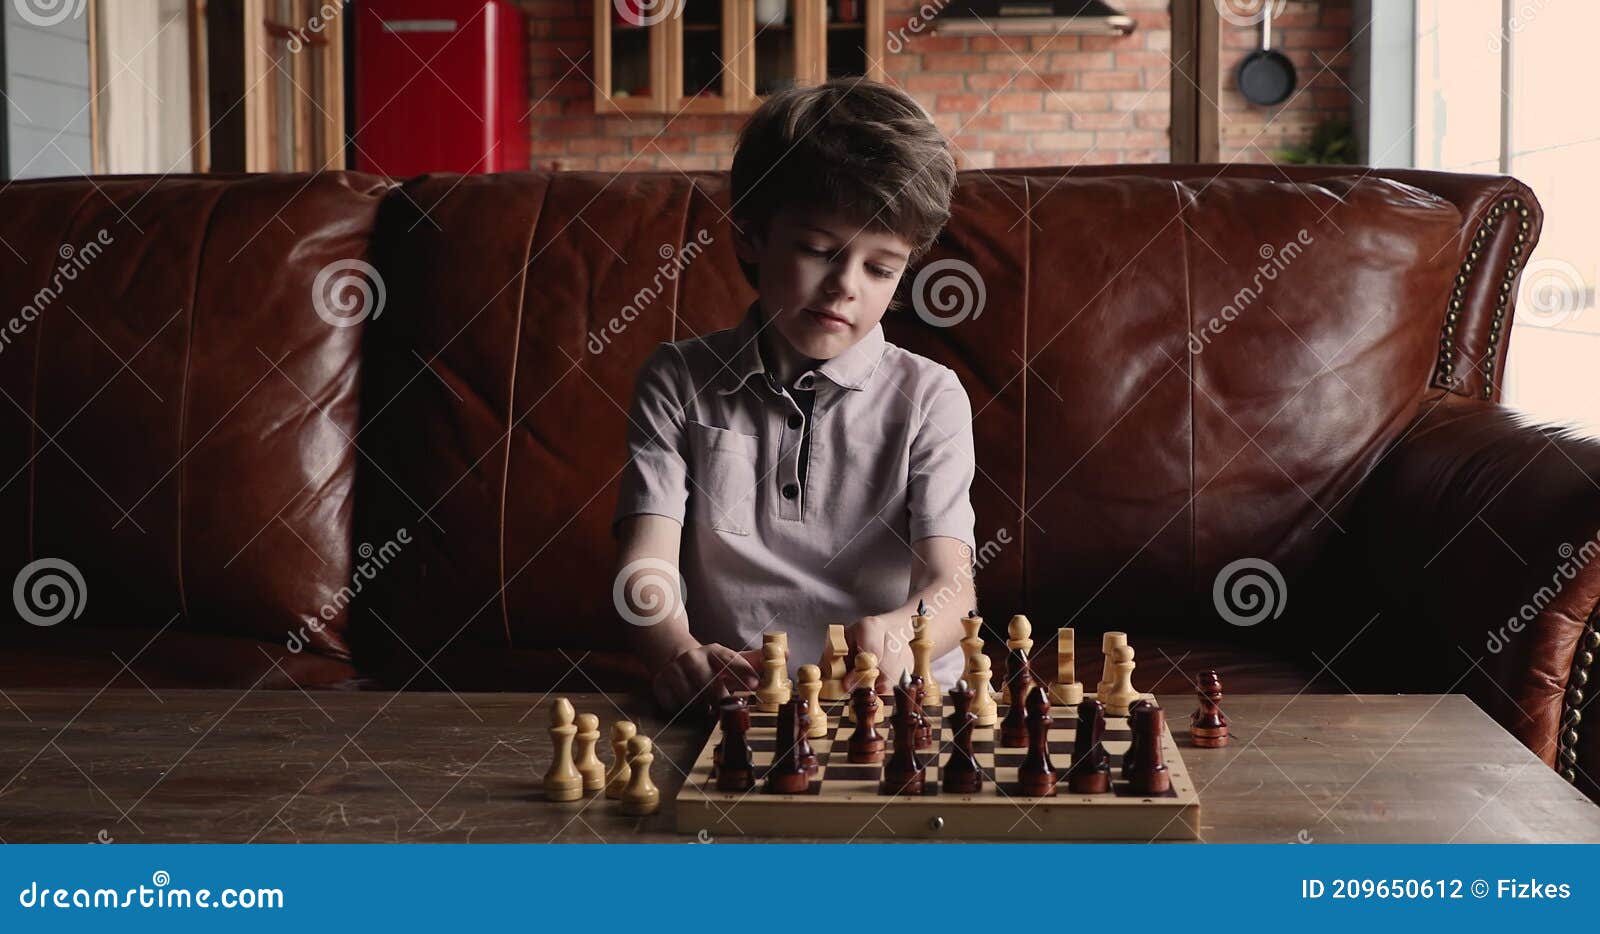 Menino ruivo de óculos sentado em casa e a jogar xadrez sozinho